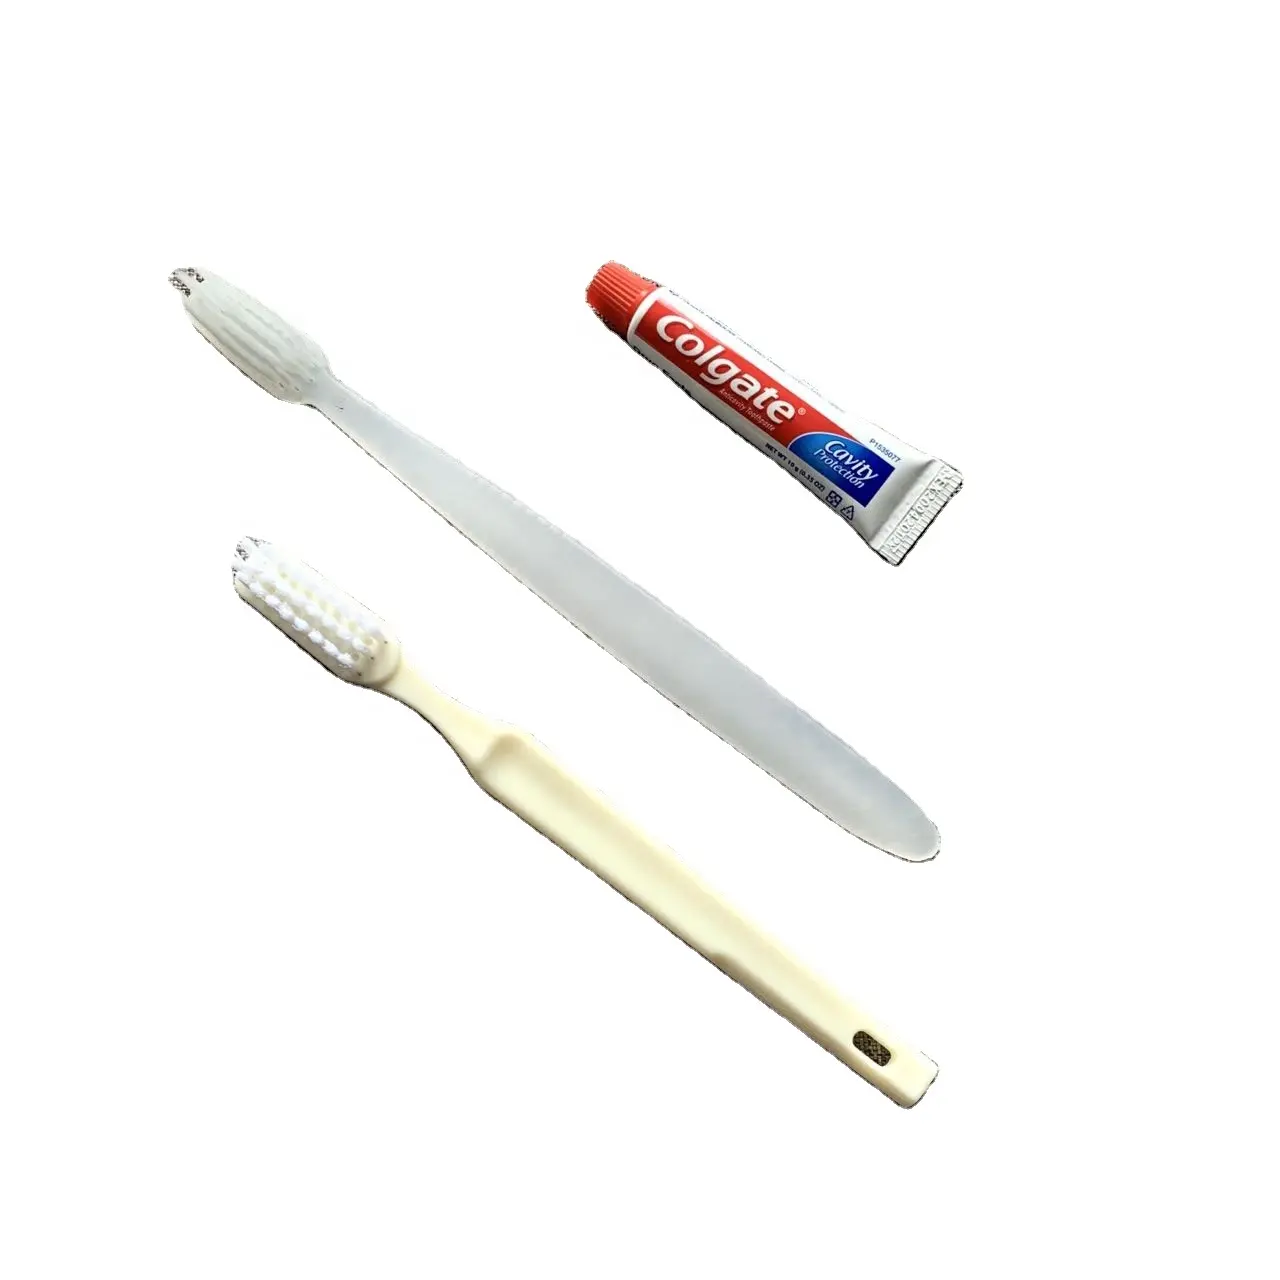 CFL небольшой минимальный объем заказа, одноразовая гостиничная зубная щетка и зубная паста, оптовая продажа, дешевый стоматологический набор